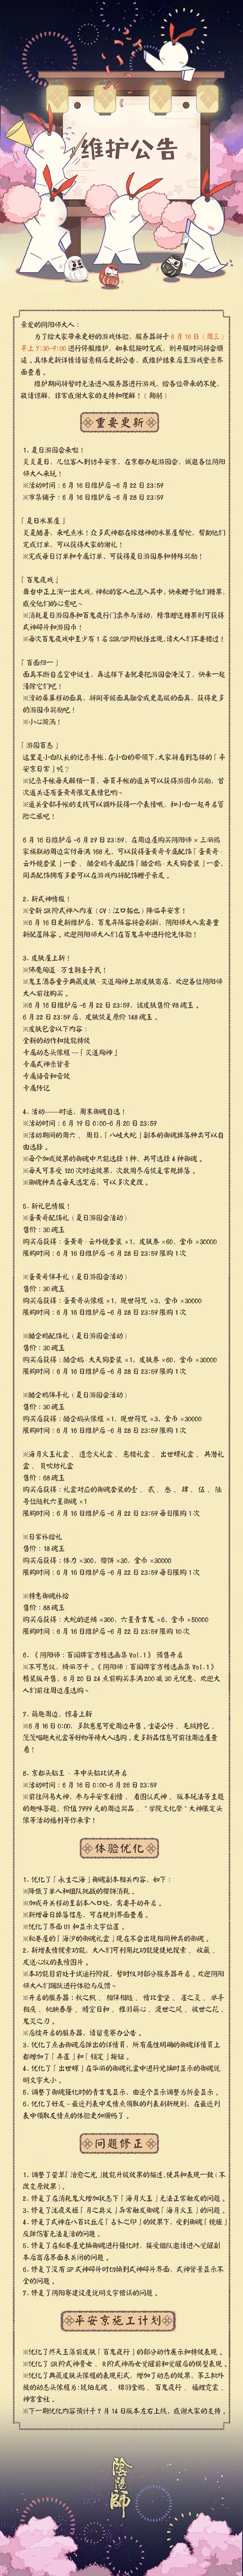 阴阳师6月16日更新公告 夏日游园会活动上线